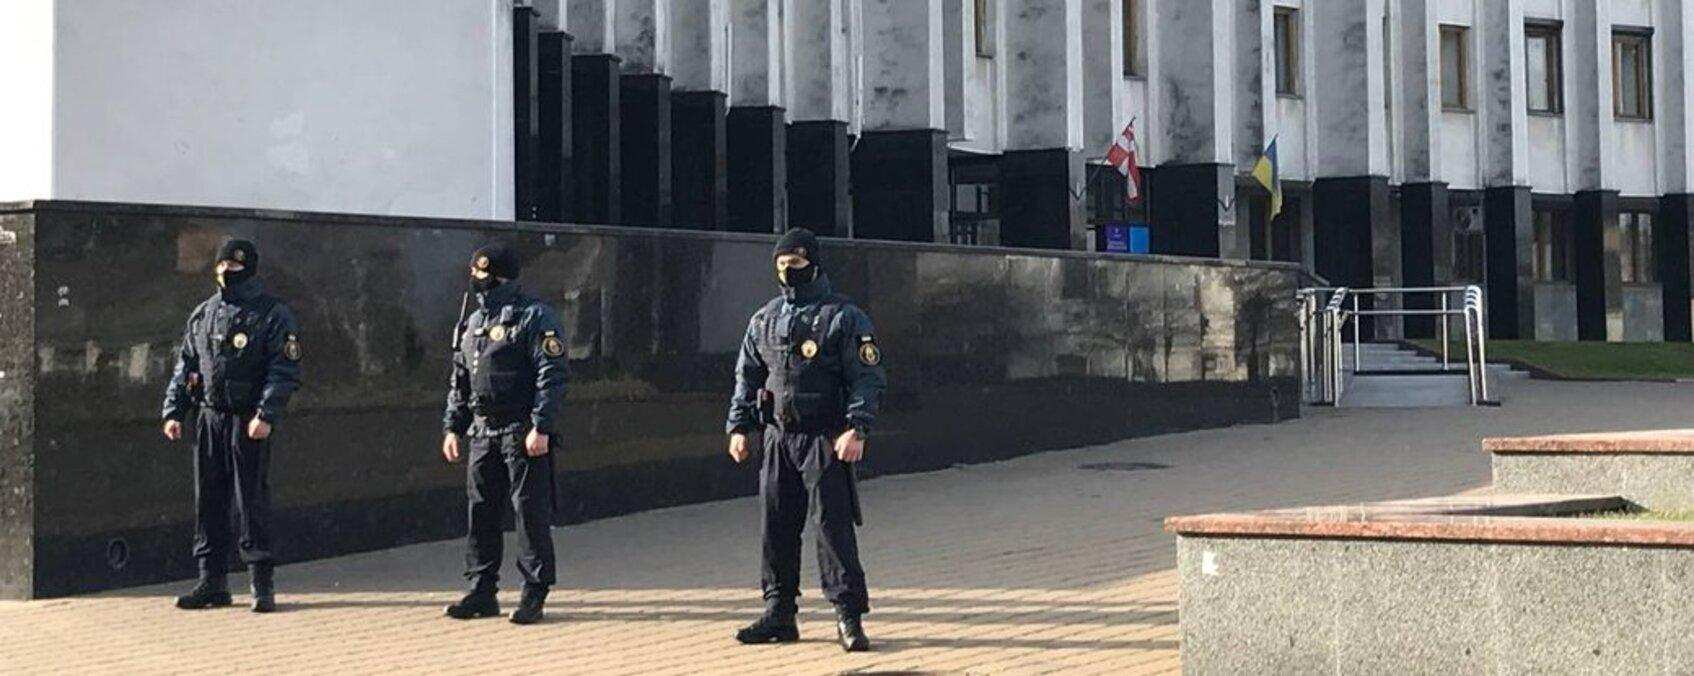 Будівлю ОДА оточили силовики: у Луцьку почалася нарада РНБО щодо кордону - Україна новини - 24 Канал